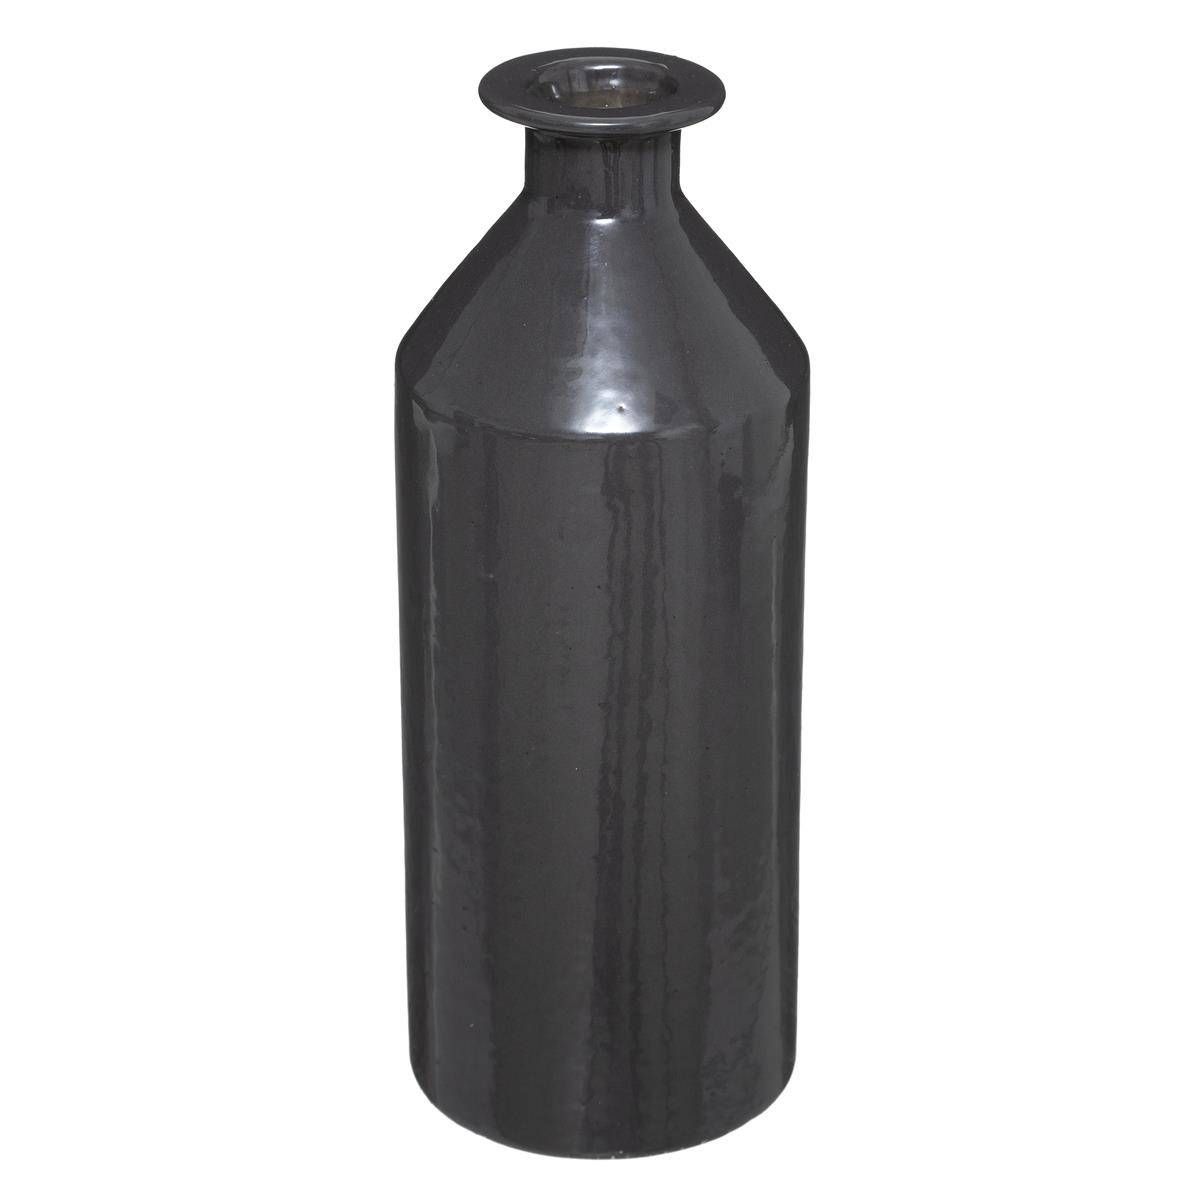 Atmosphera Černá keramická váza, 21,5 cm - EDAXO.CZ s.r.o.